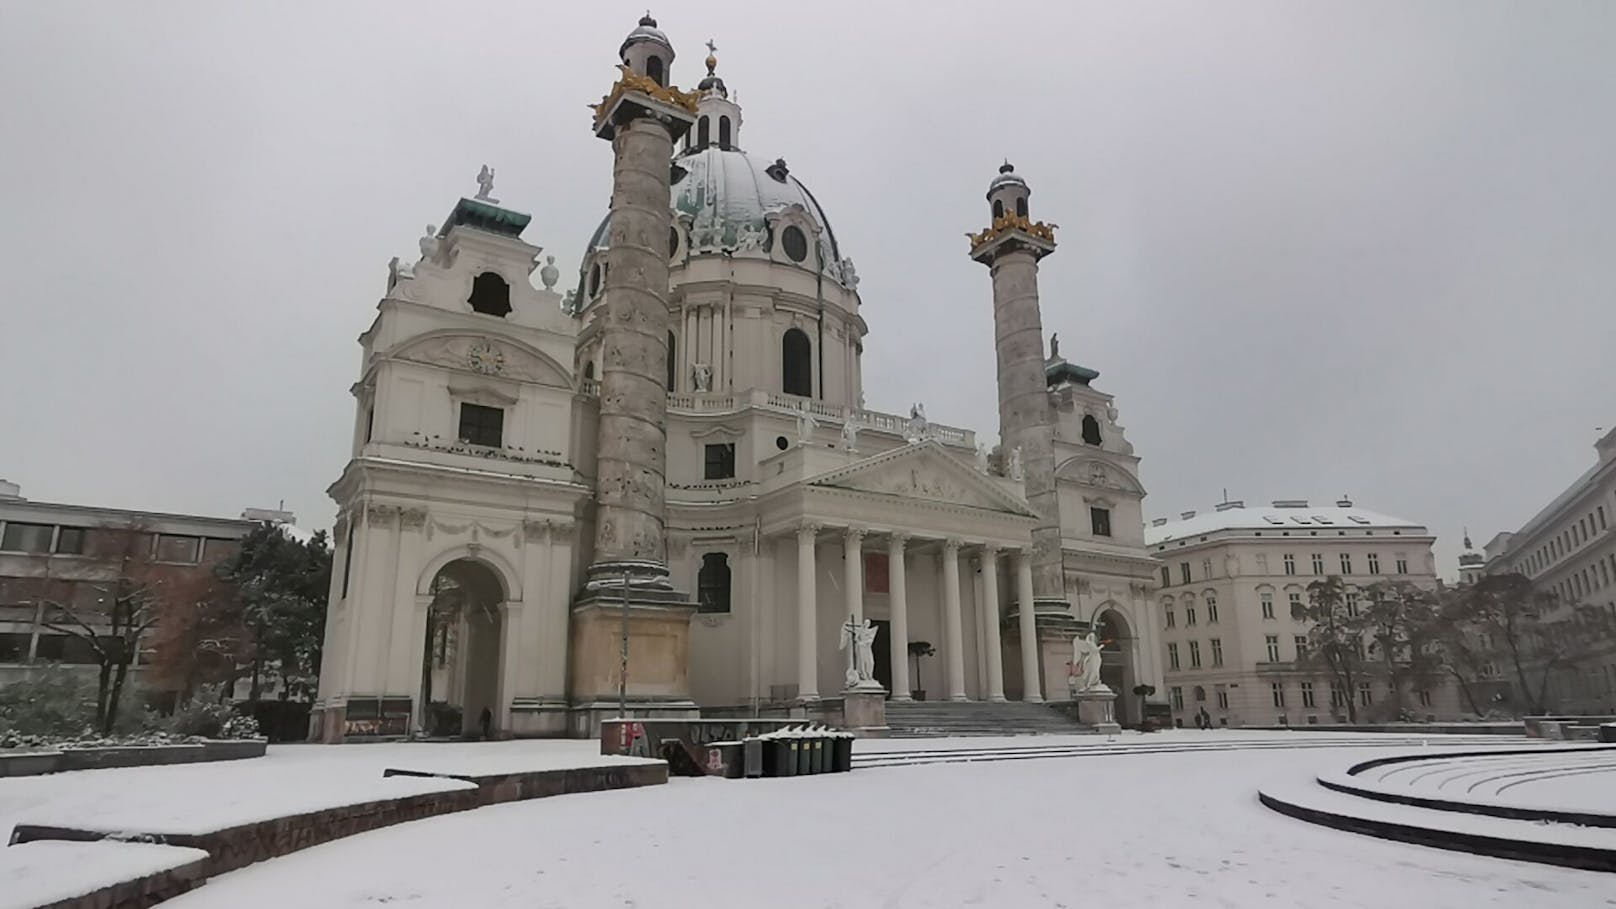 In Wien hat es seit den frühen Morgenstunden zu schneien begonnen.